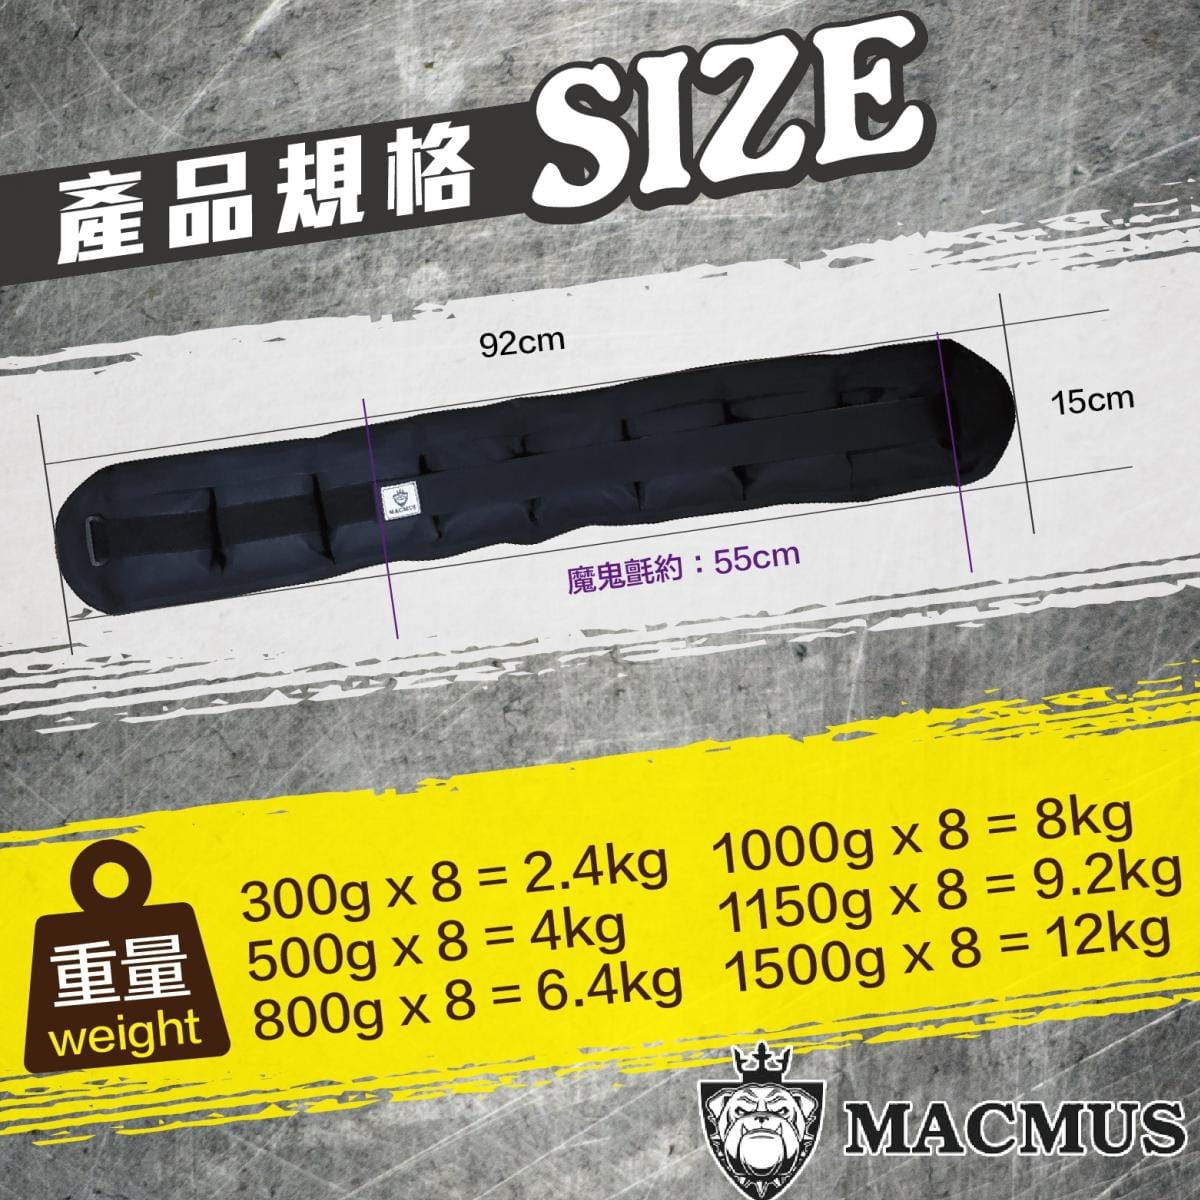 【MACMUS】9.2公斤負重腰帶｜8格式可調整重訓腰帶｜強化核心肌群鍛鍊腰部肌肉 1